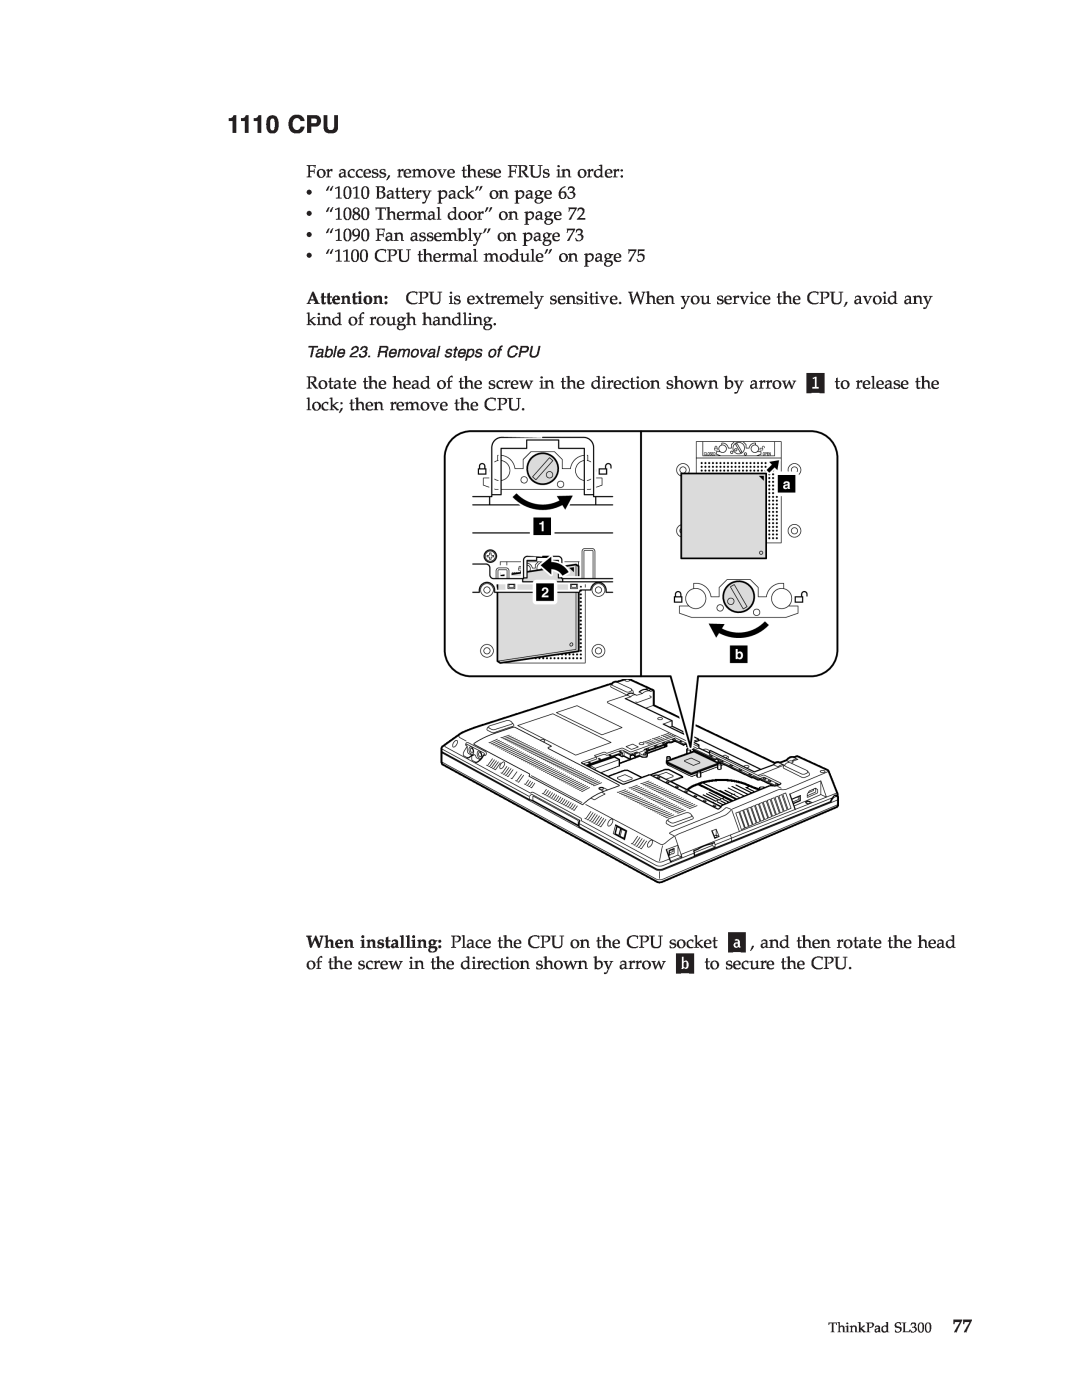 Lenovo SL300 manual 1110 CPU, Removal steps of CPU 